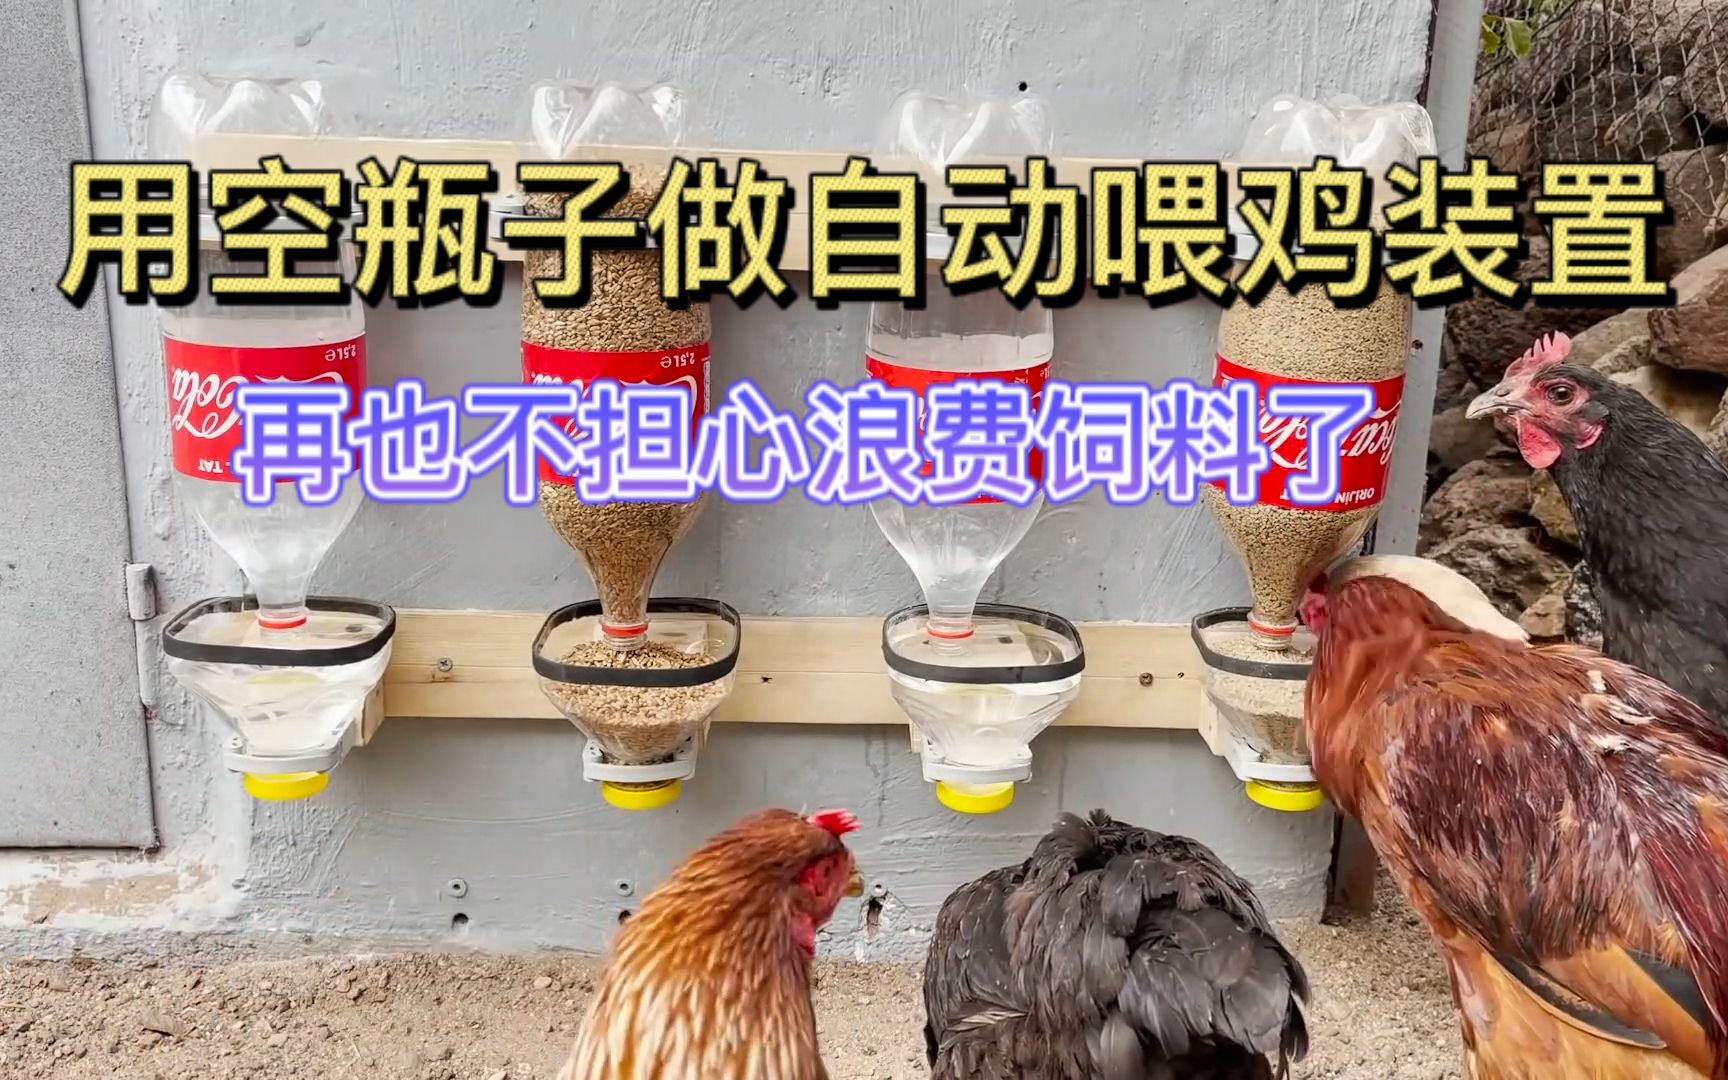 用空水瓶自制自动喂鸡装置,不仅节省人工,还节约了饲料